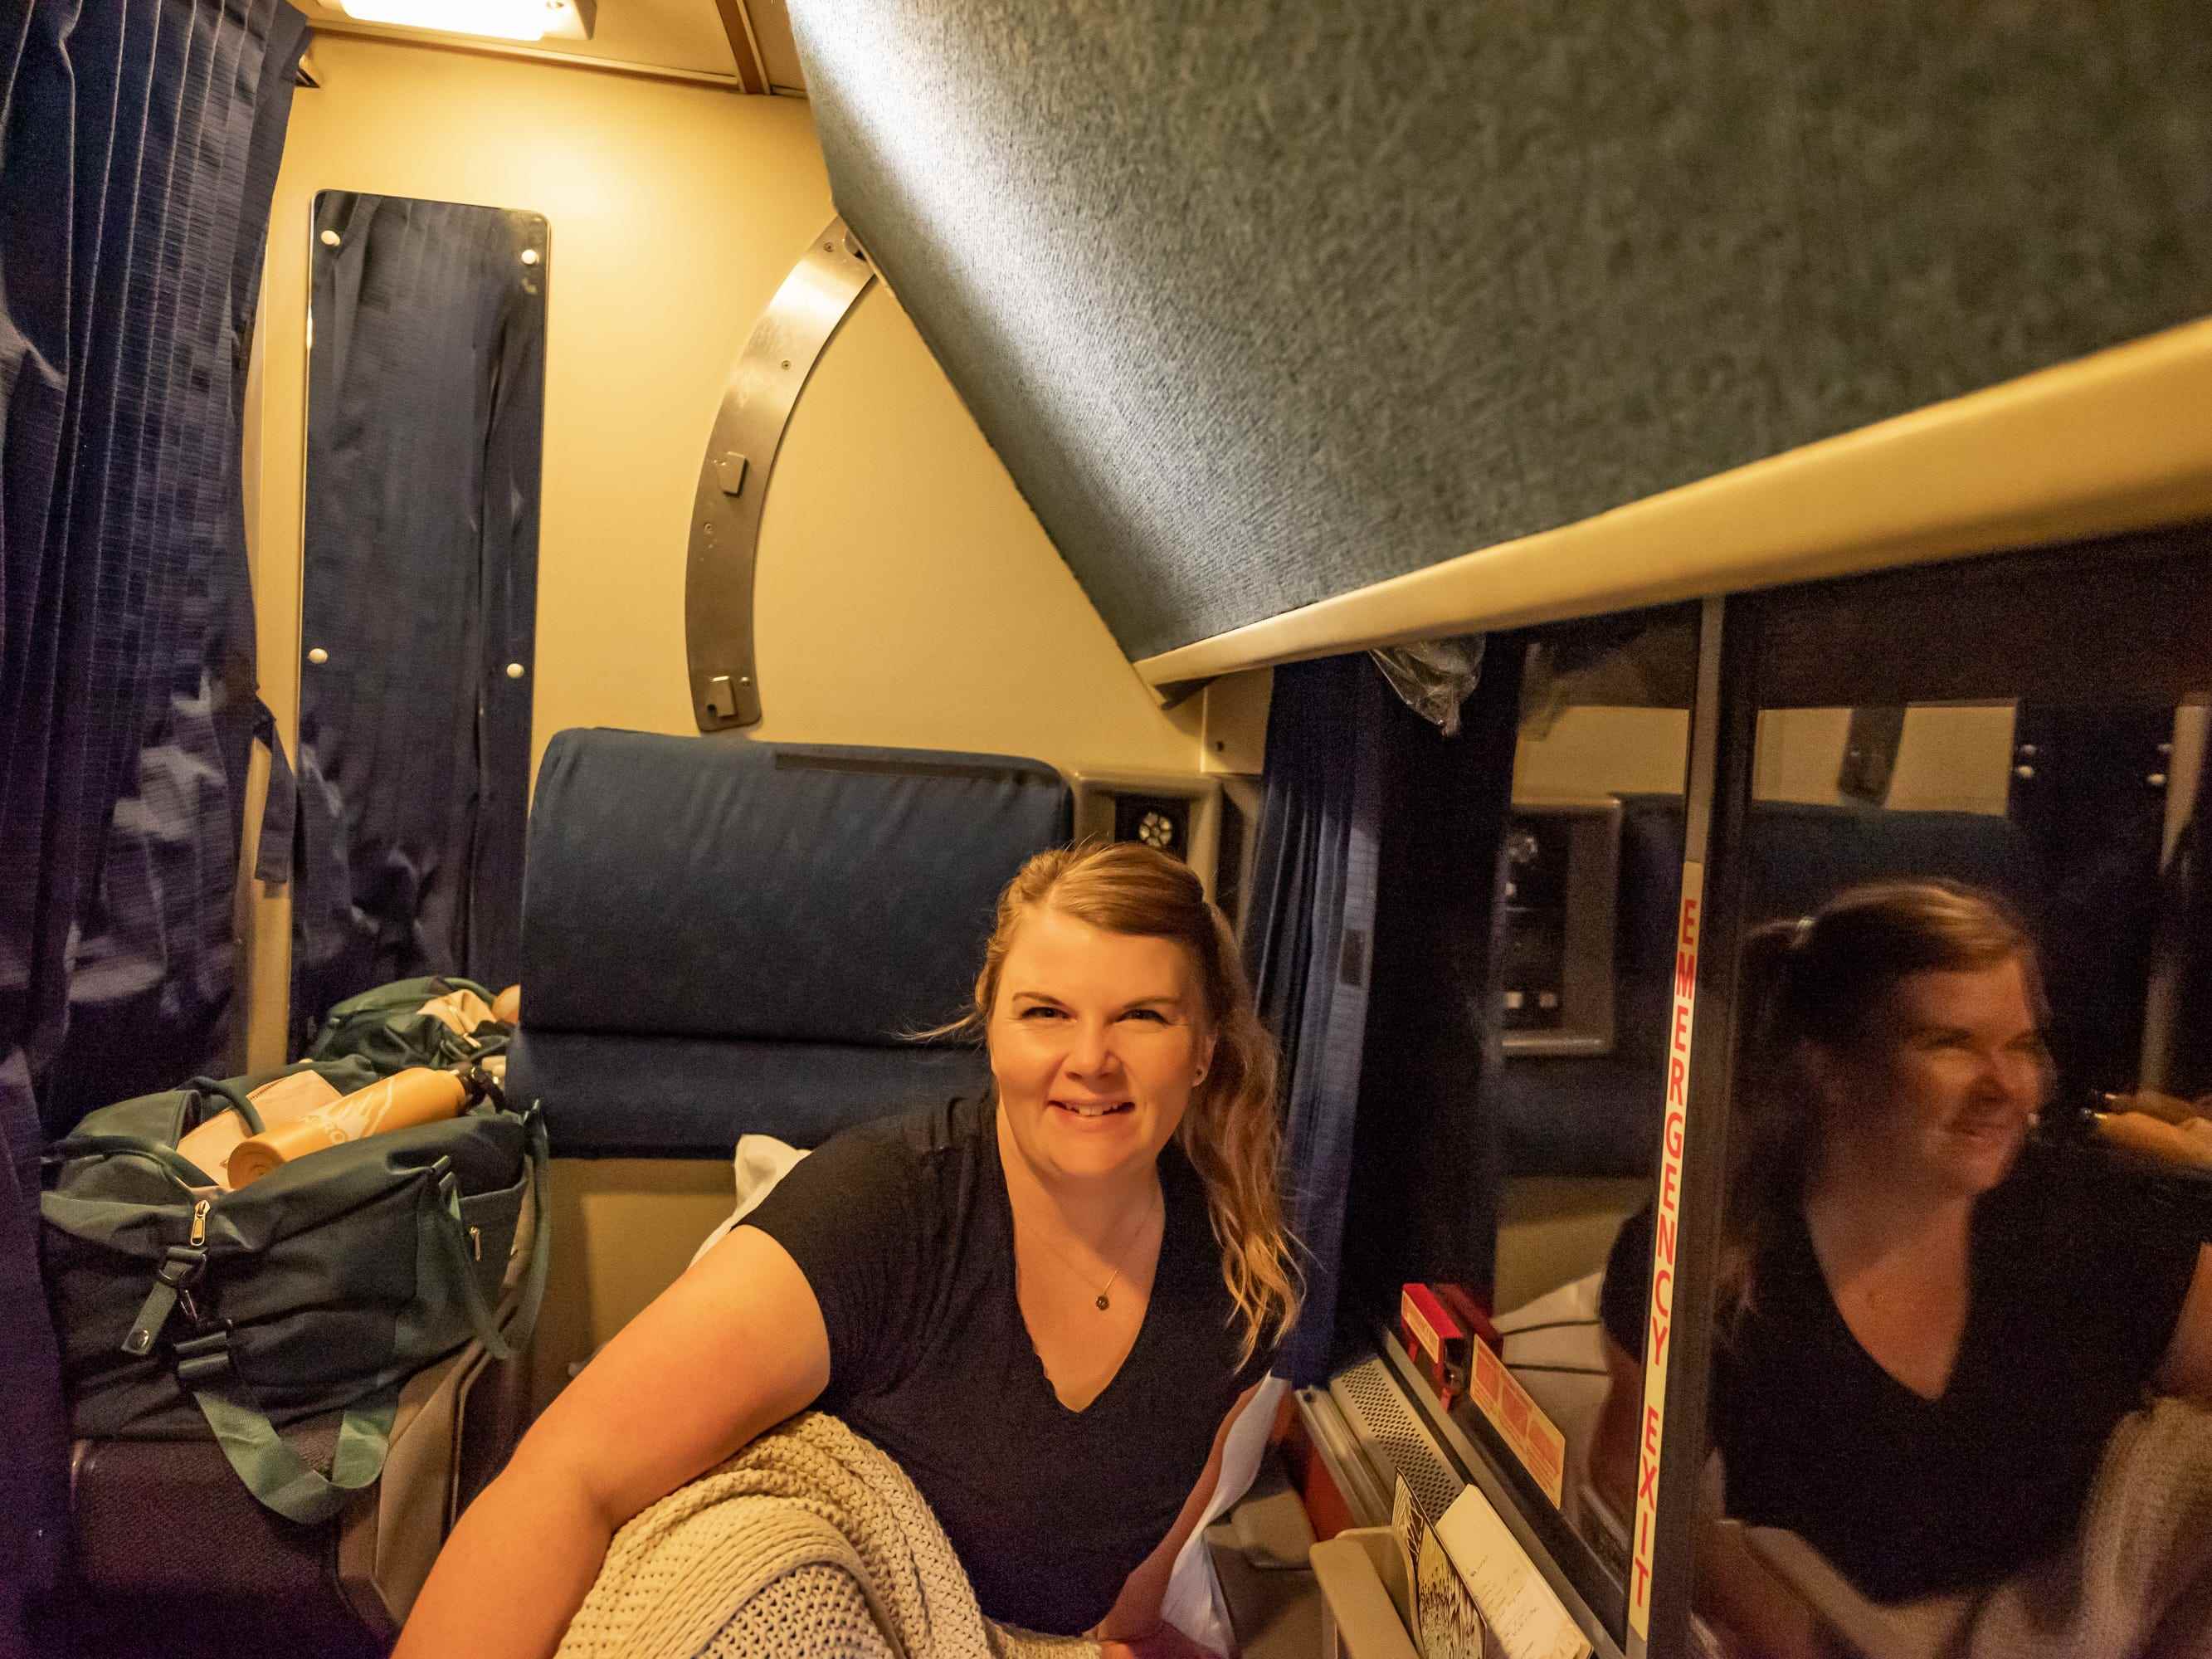 Der Autor sitzt in einem schwach beleuchteten Schlafwagen von Amtrak